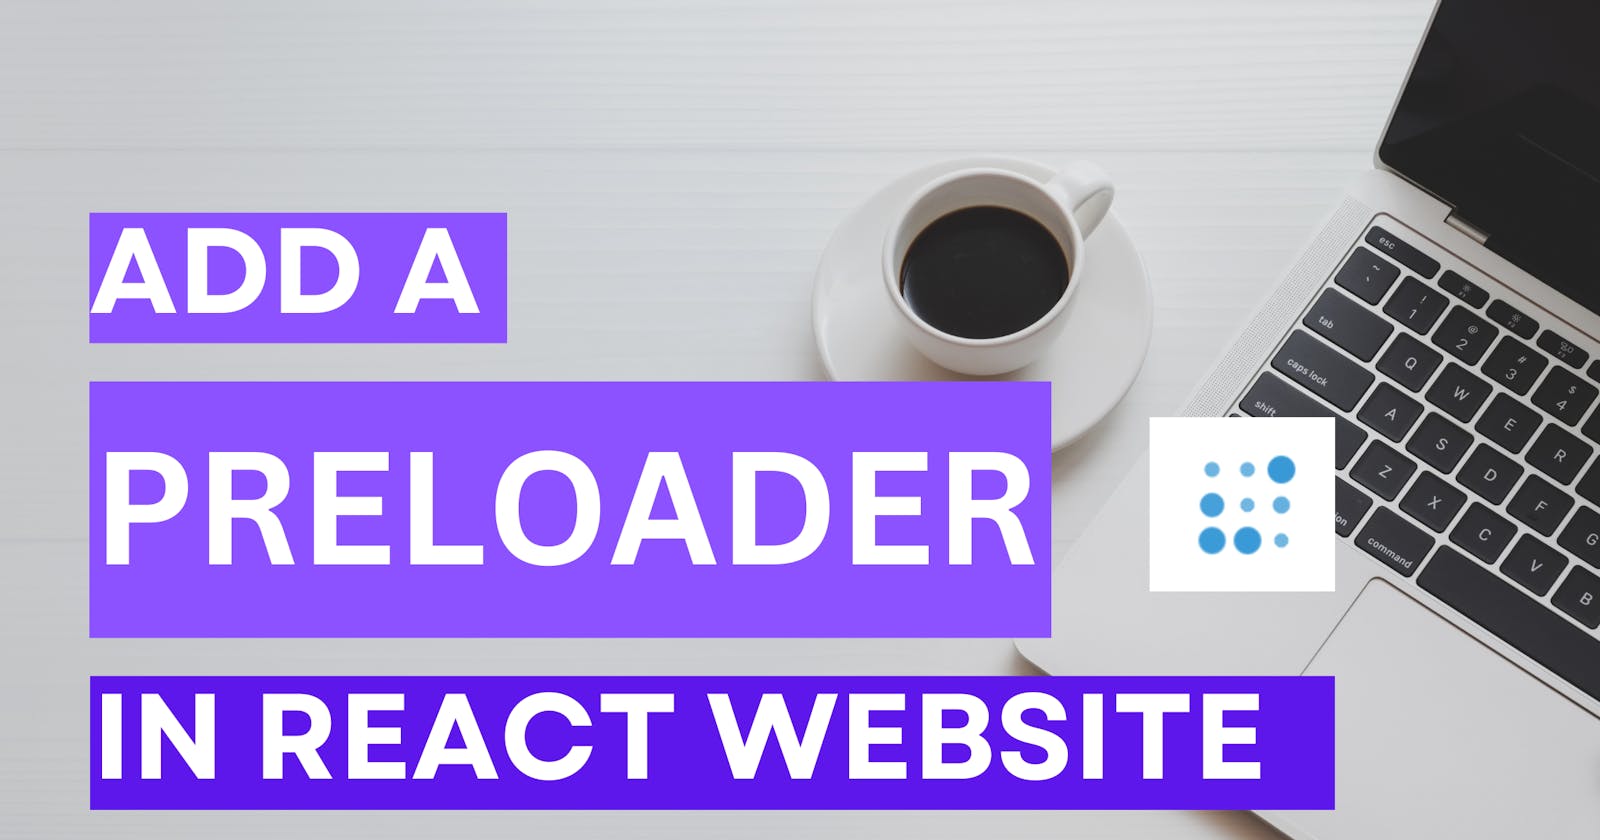 Preloaders in React Websites